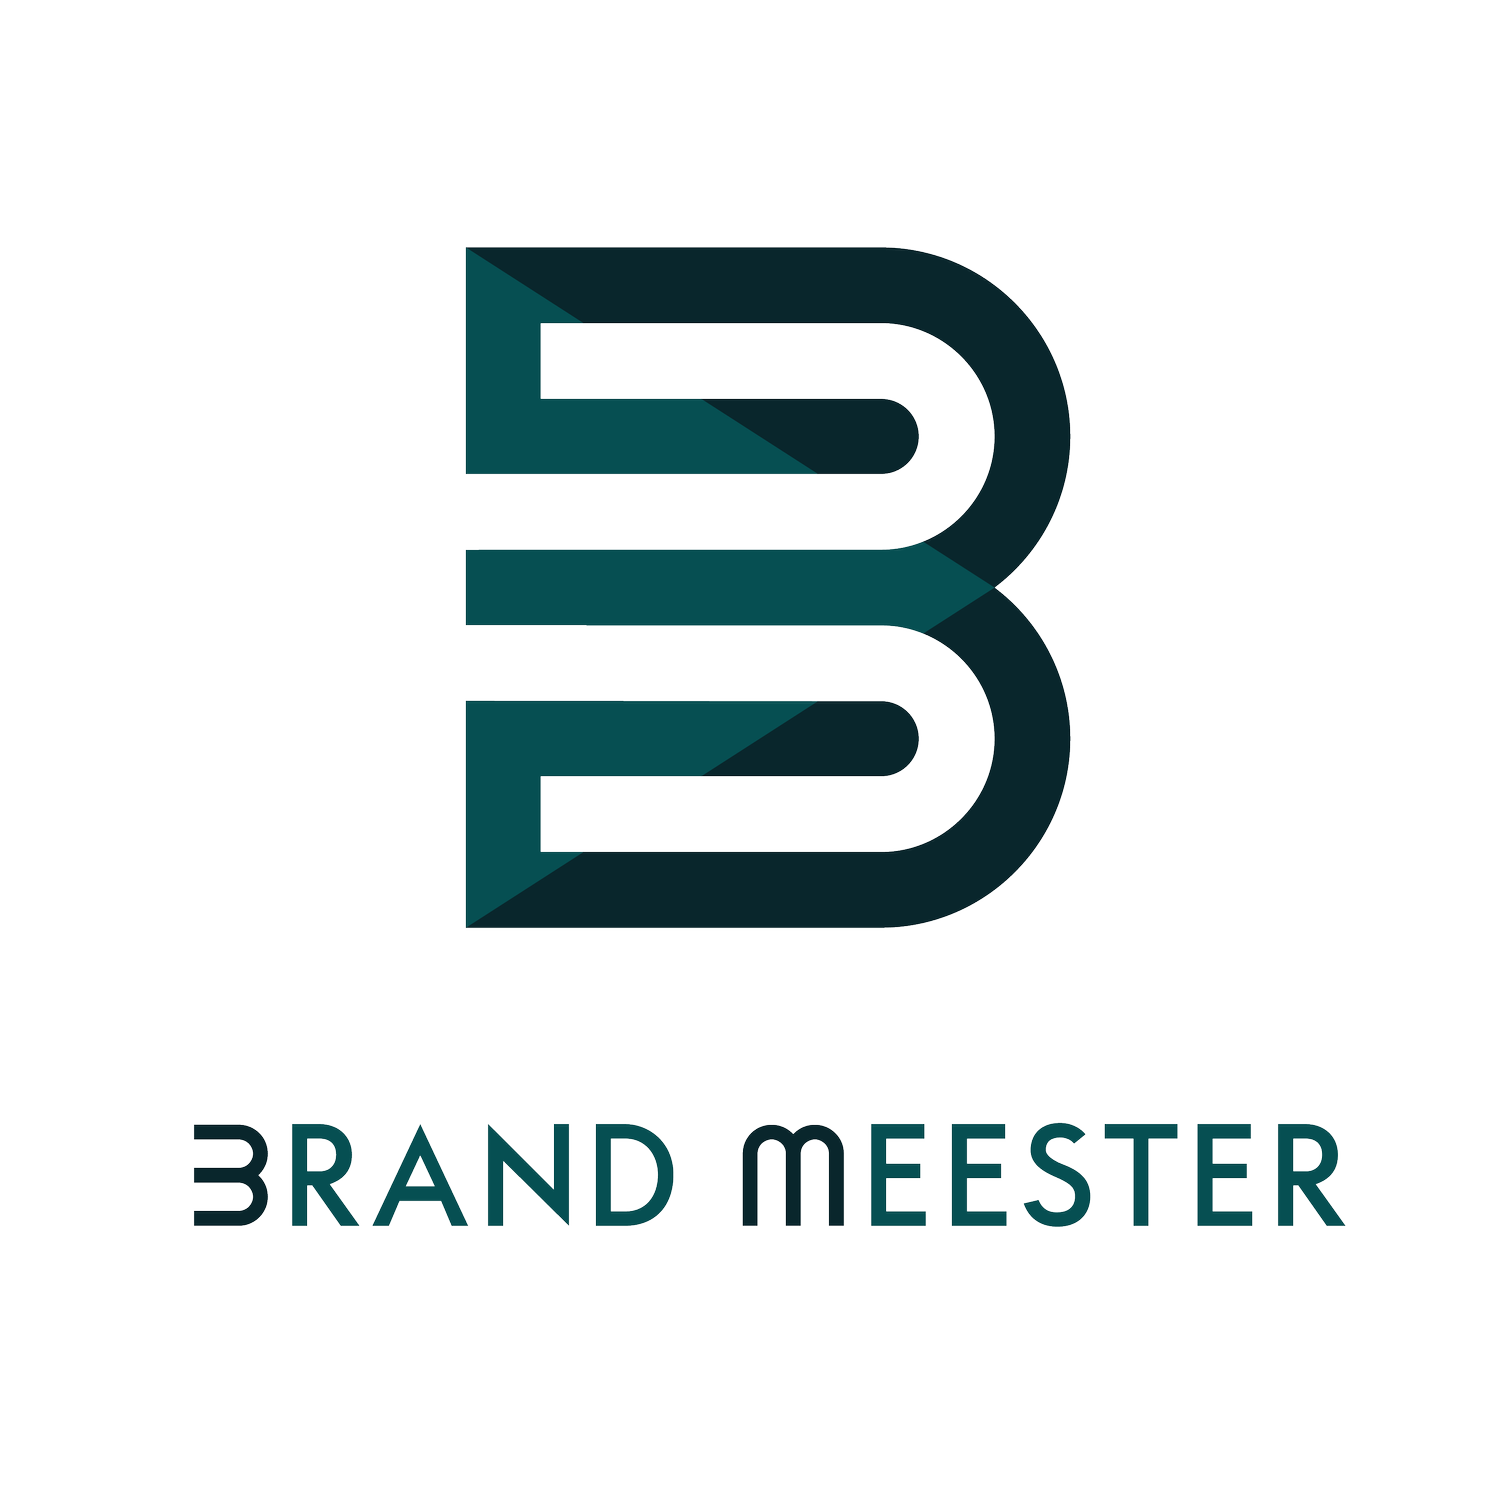 Brand Meester